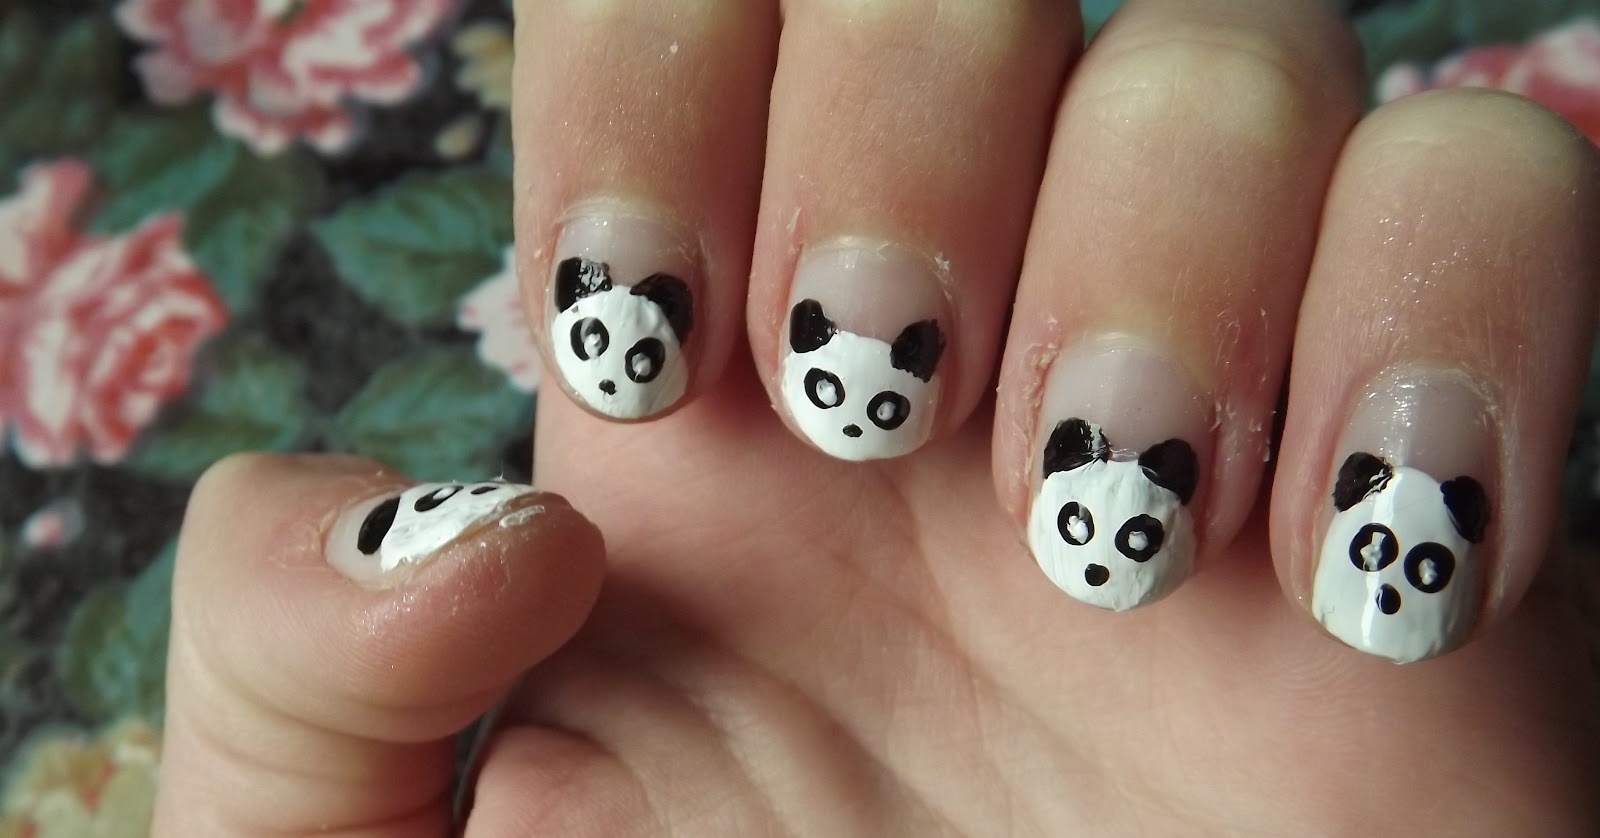 1. Cute Panda Acrylic Nail Design - wide 2